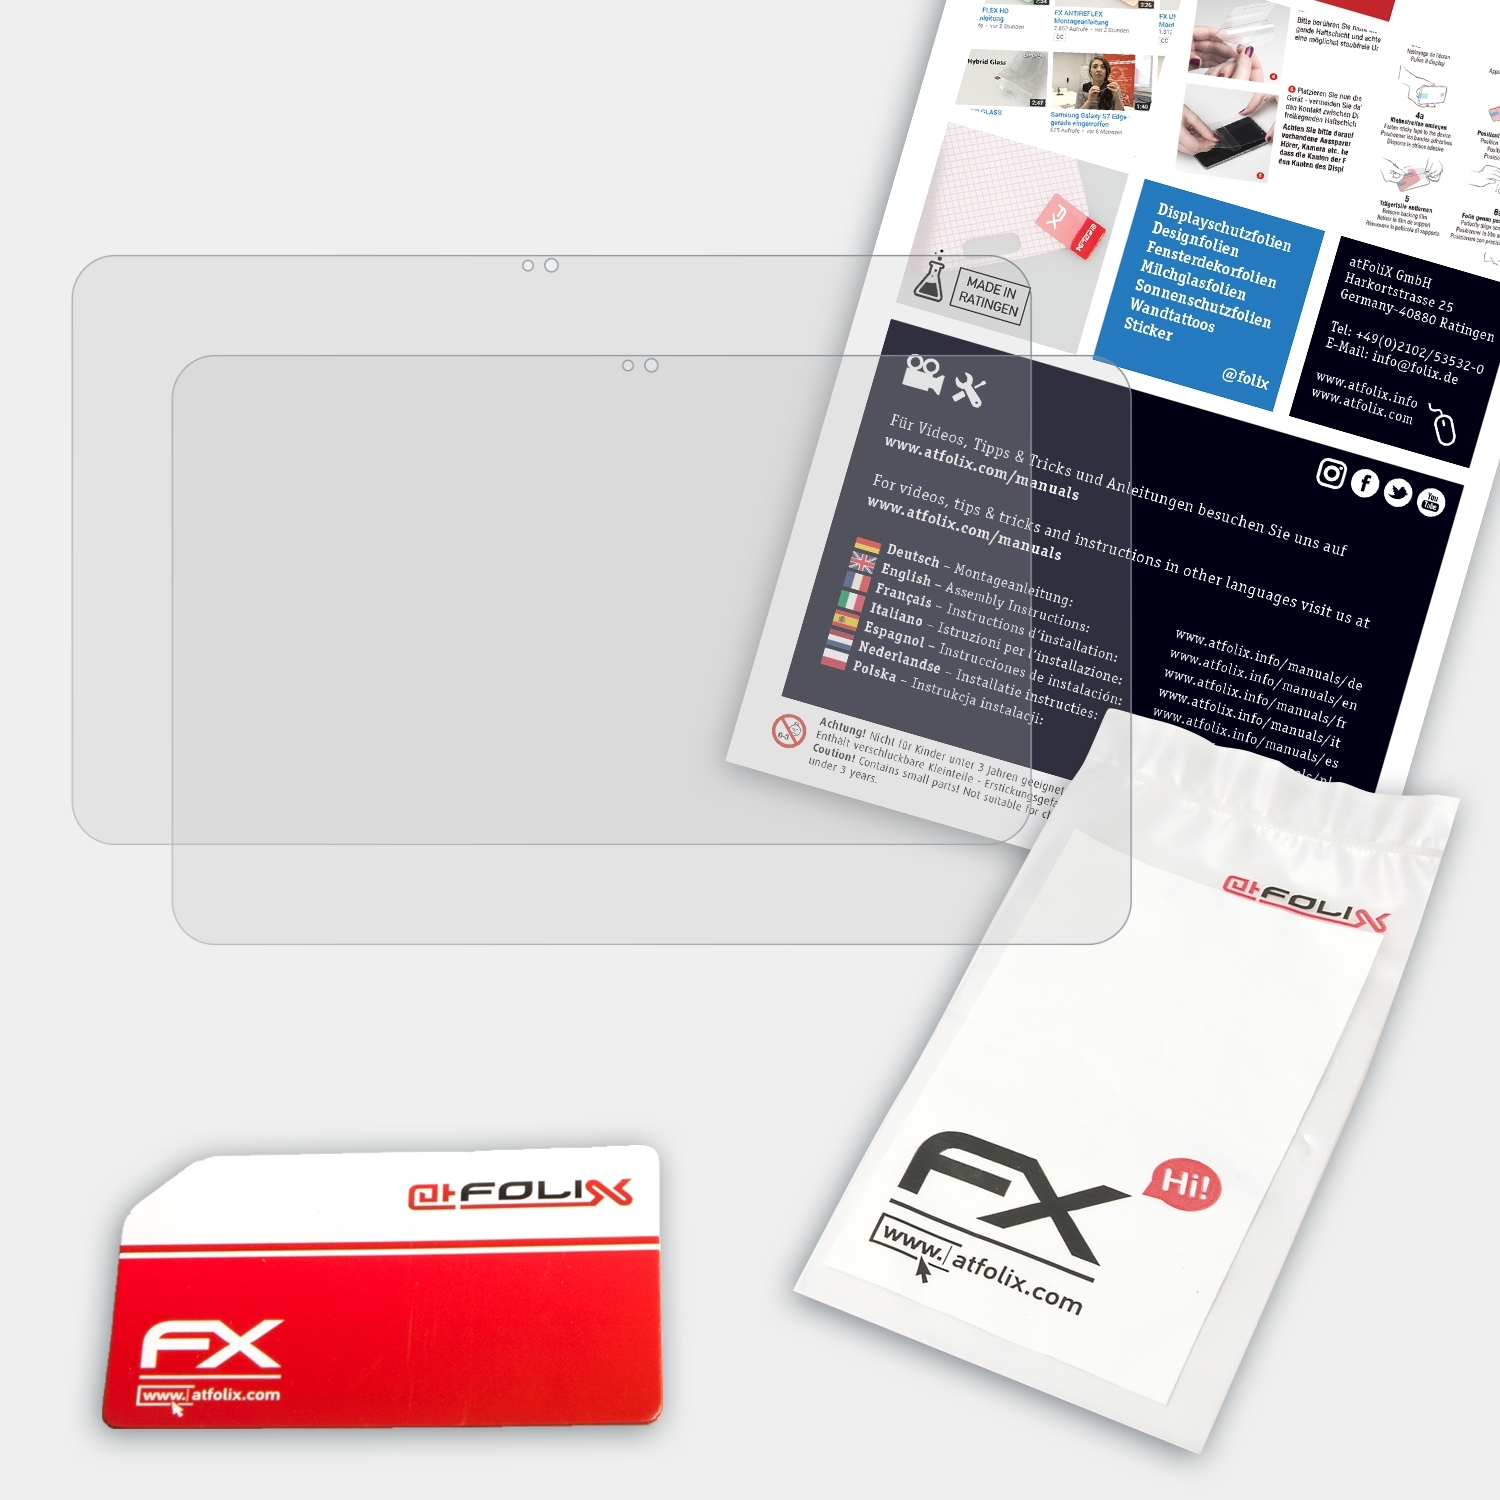 ATFOLIX 2x FX-Antireflex Displayschutz(für x360 HP 13,3 (2014)) Pavilion